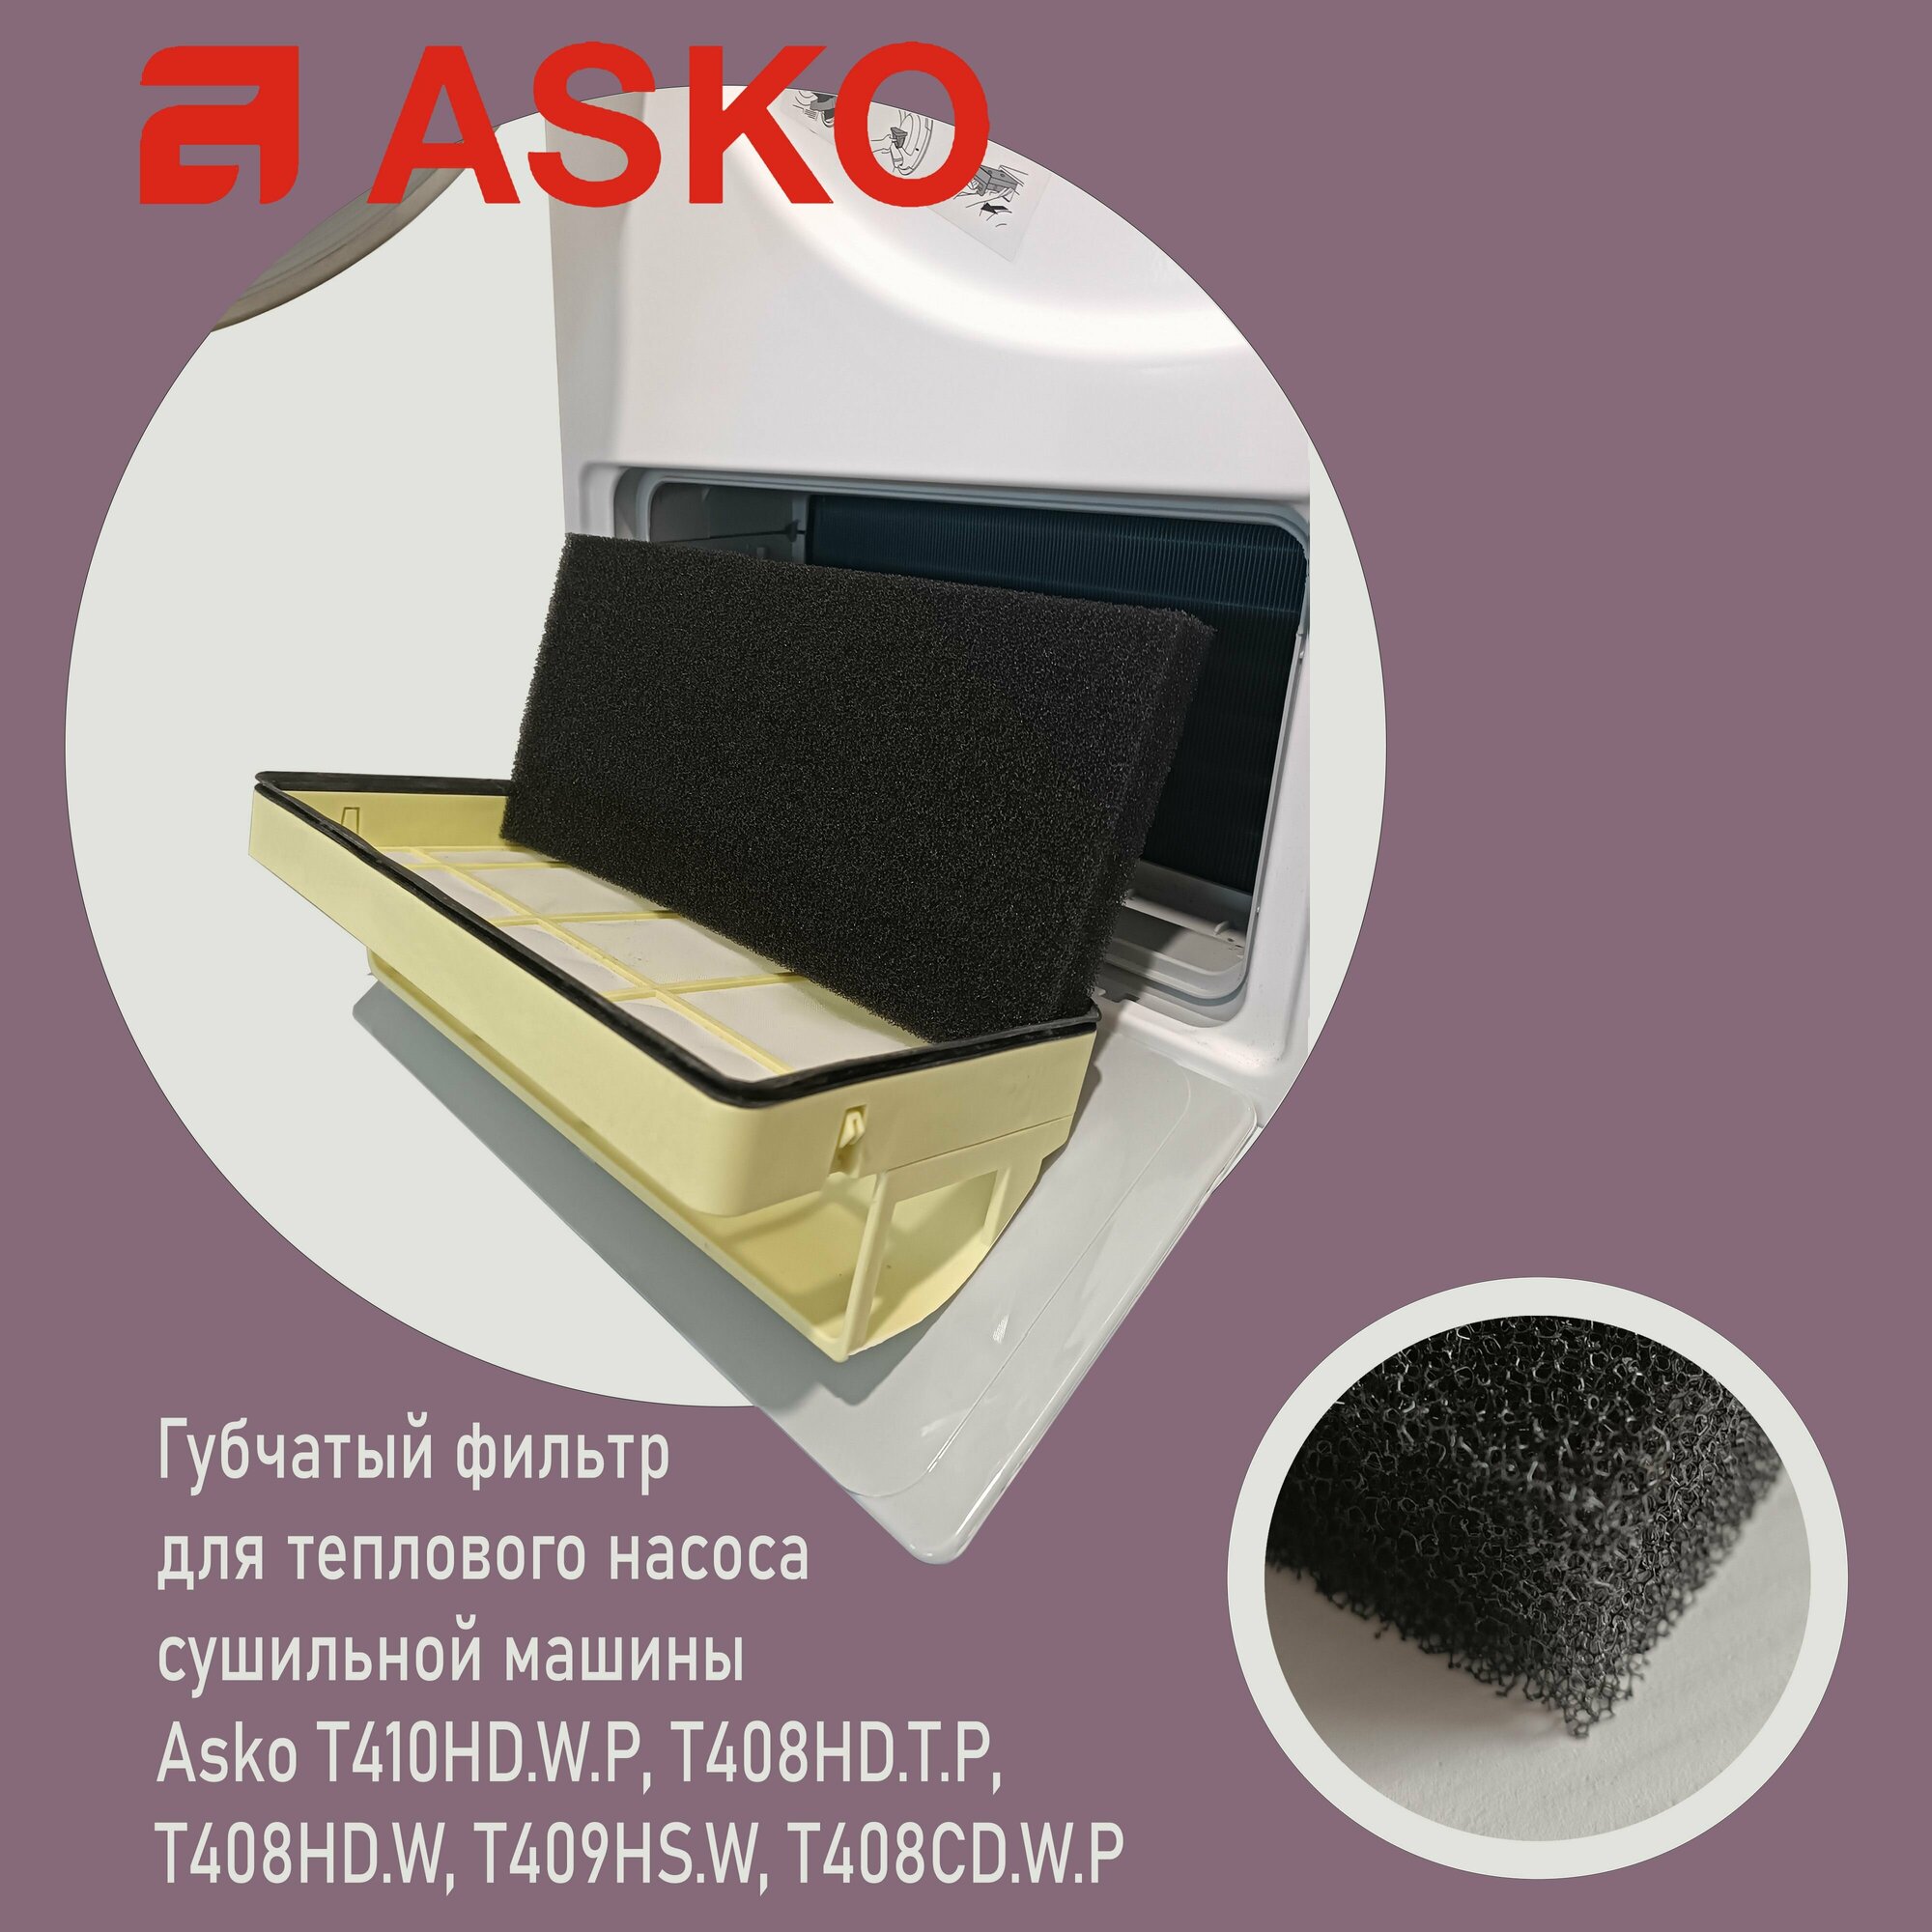 Фильтр для сушильных машин ASKO T408HD. W, T409HS. W